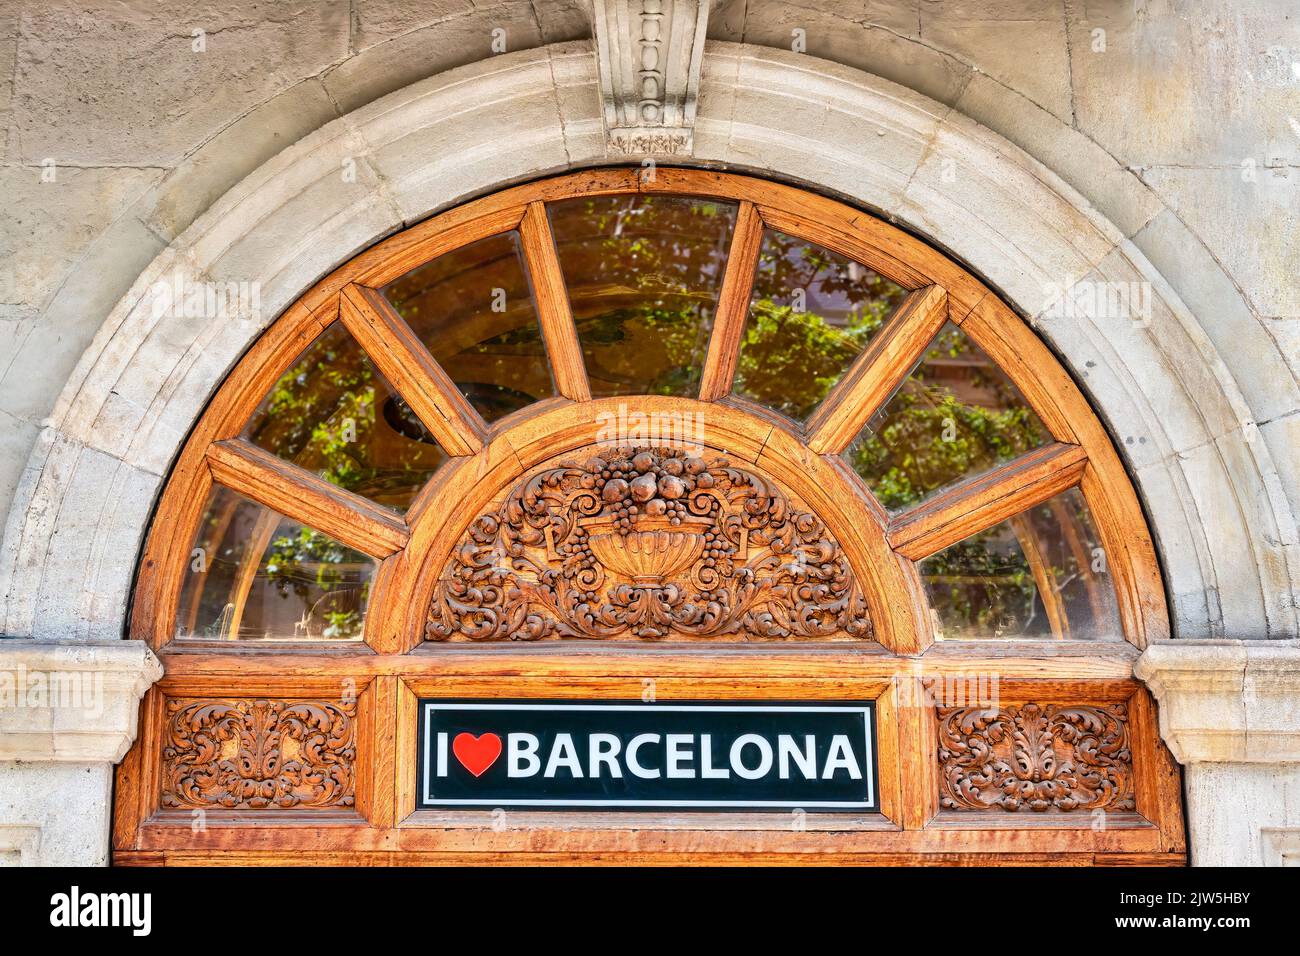 Une arche architecturale avec des sculptures en bois décorant une entrée de bâtiment. Il y a un signe lisant J'aime Barcelone Banque D'Images